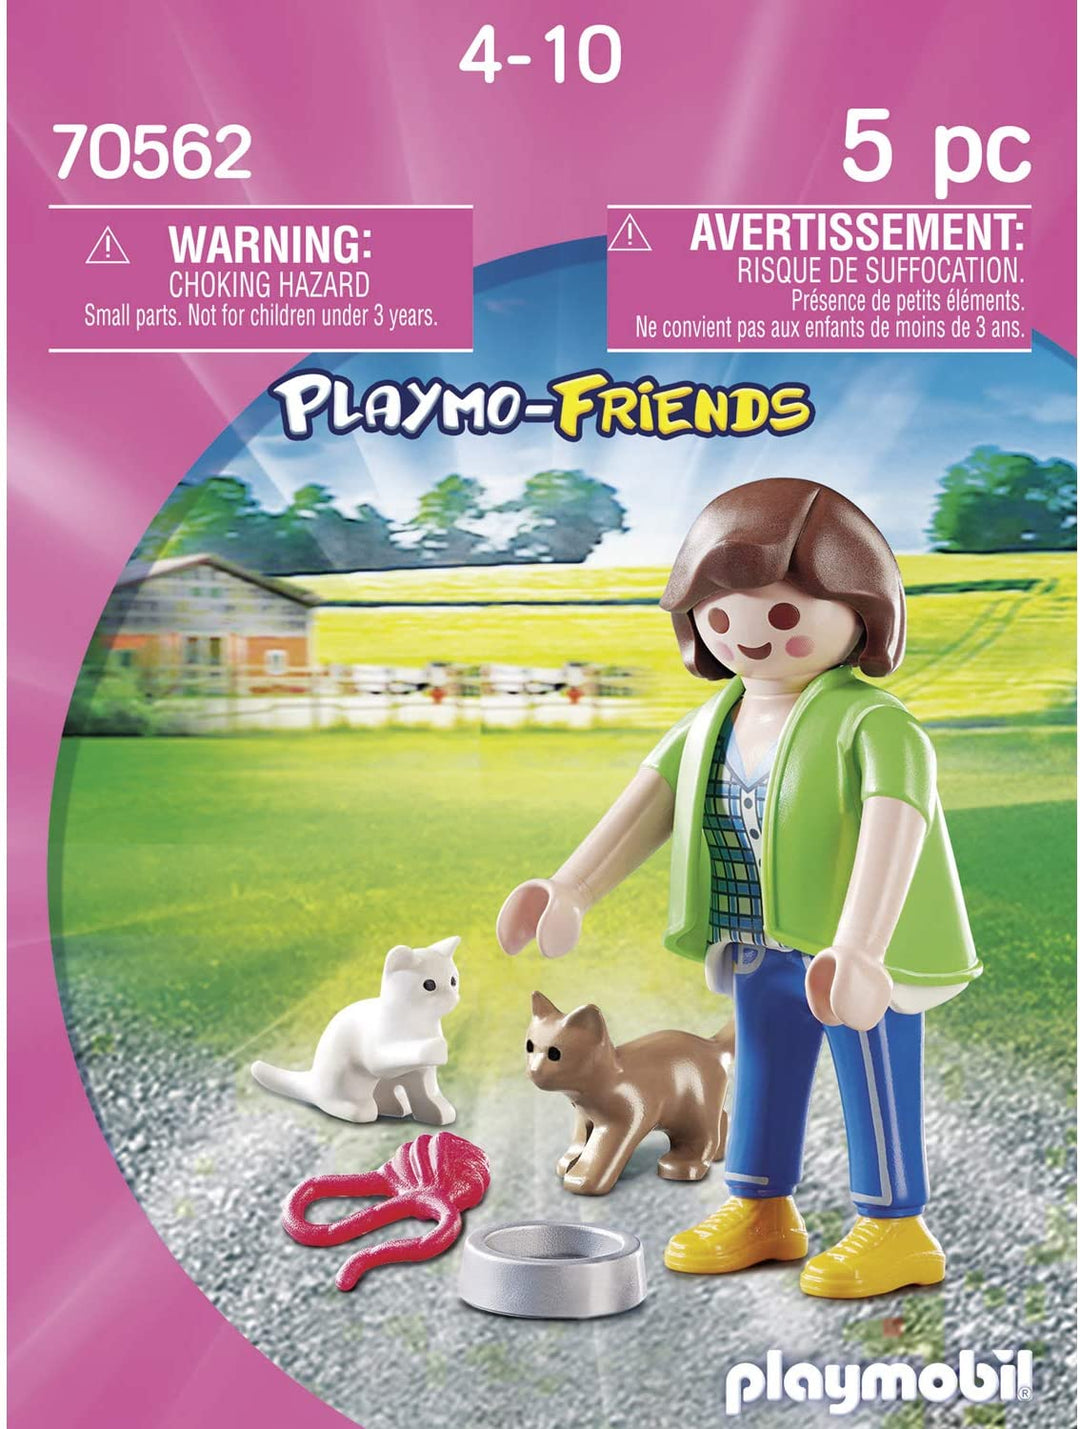 Playmobil 70562 Playmo-Friends Boy avec voiture télécommandée, pour les enfants à partir de 4 ans